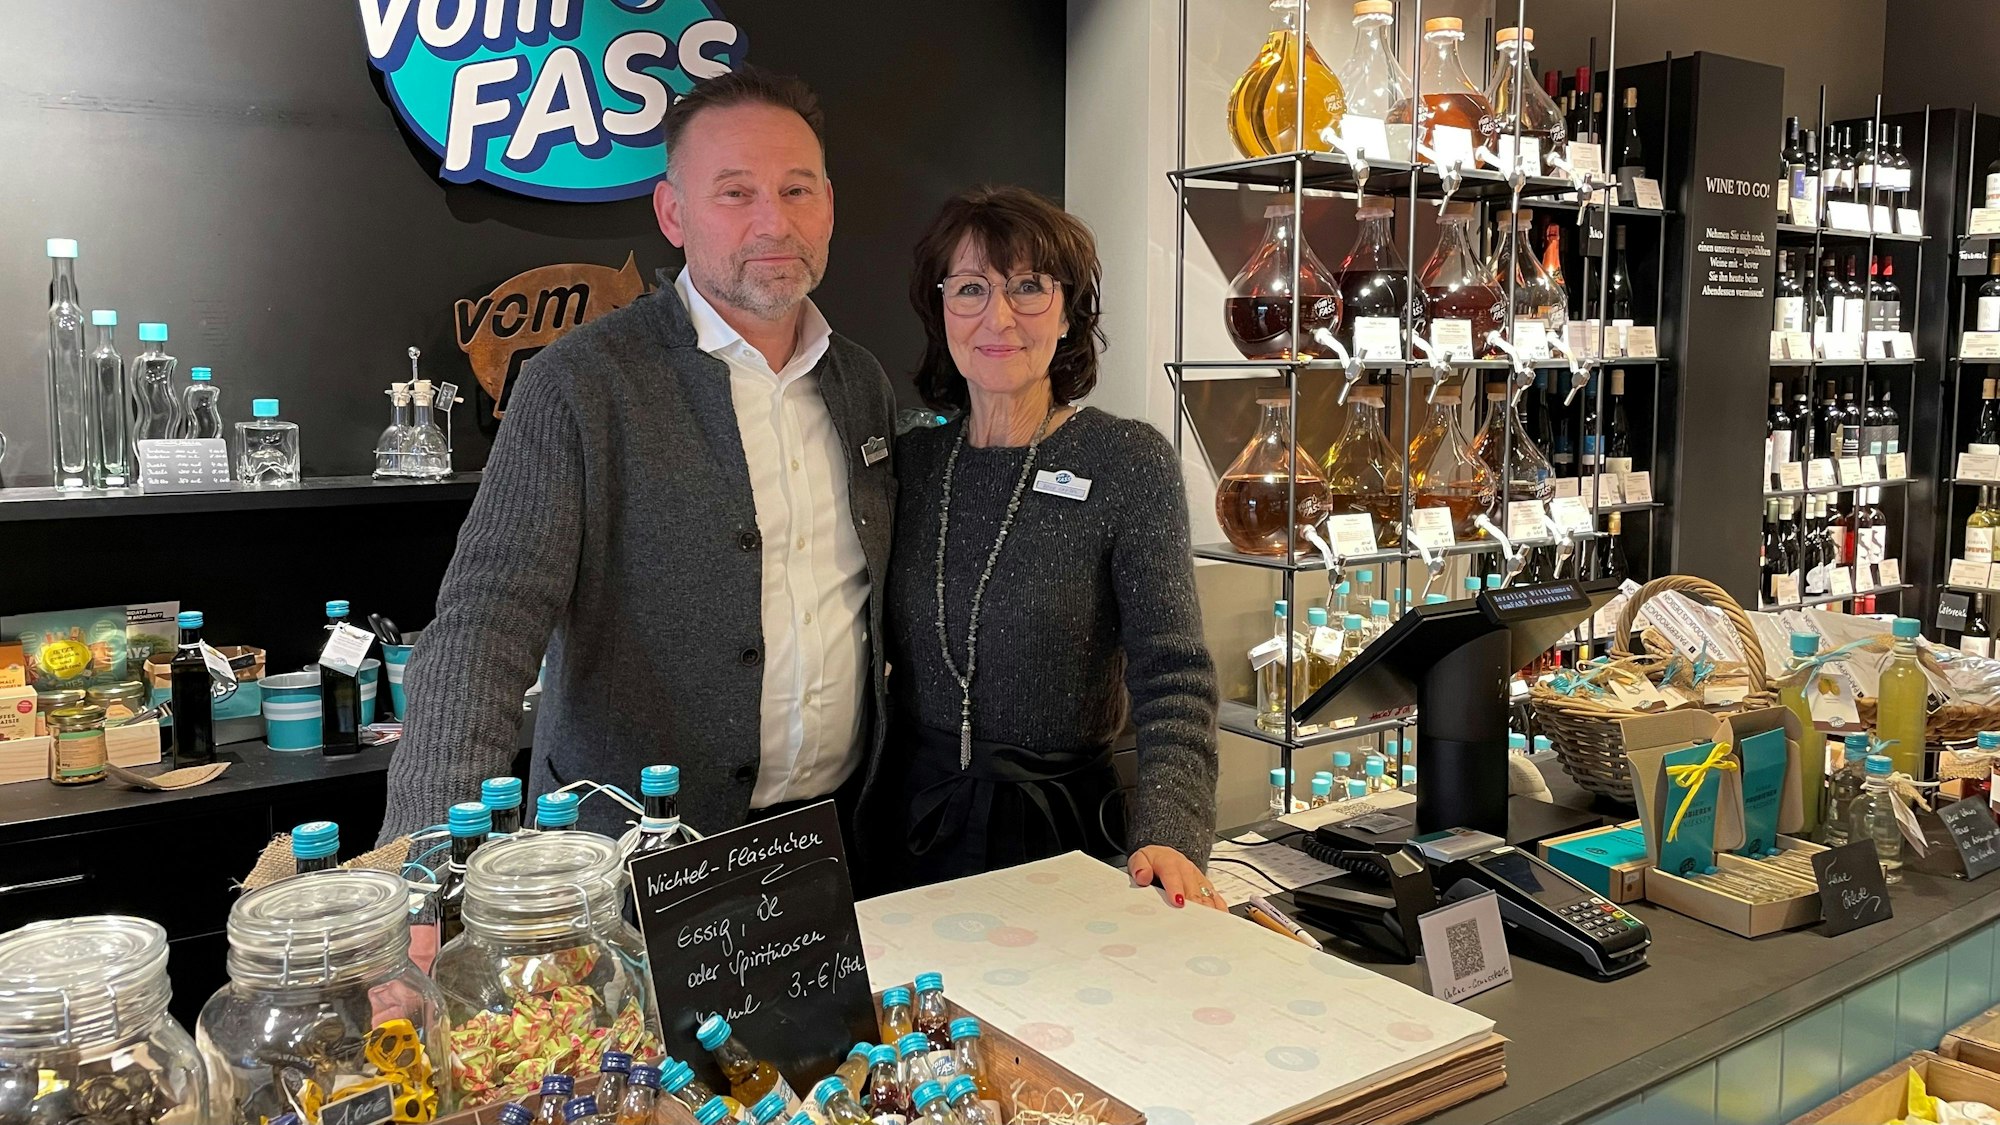 Die Betreiber Uwe und Heike Gaebel stehen hinter der Verkaufstheke ihres Ladens "Vom Fass".